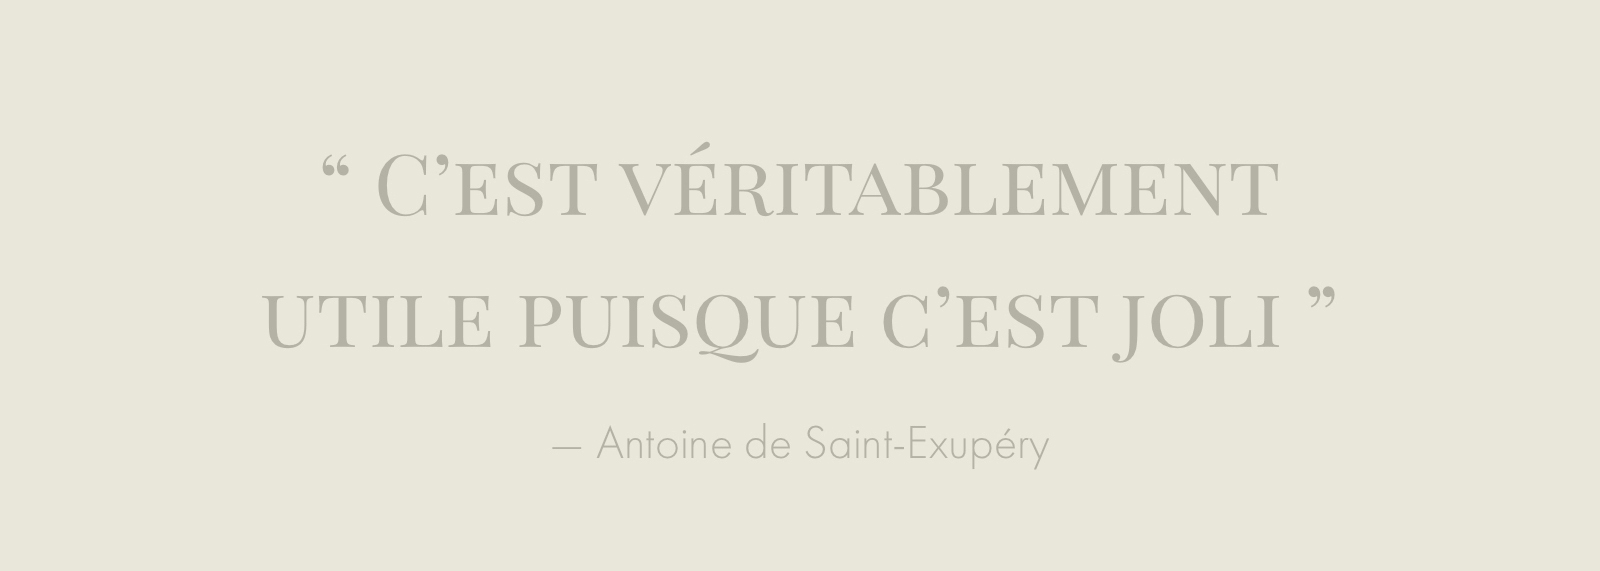 Citation Antoine de Saint-Exupéry